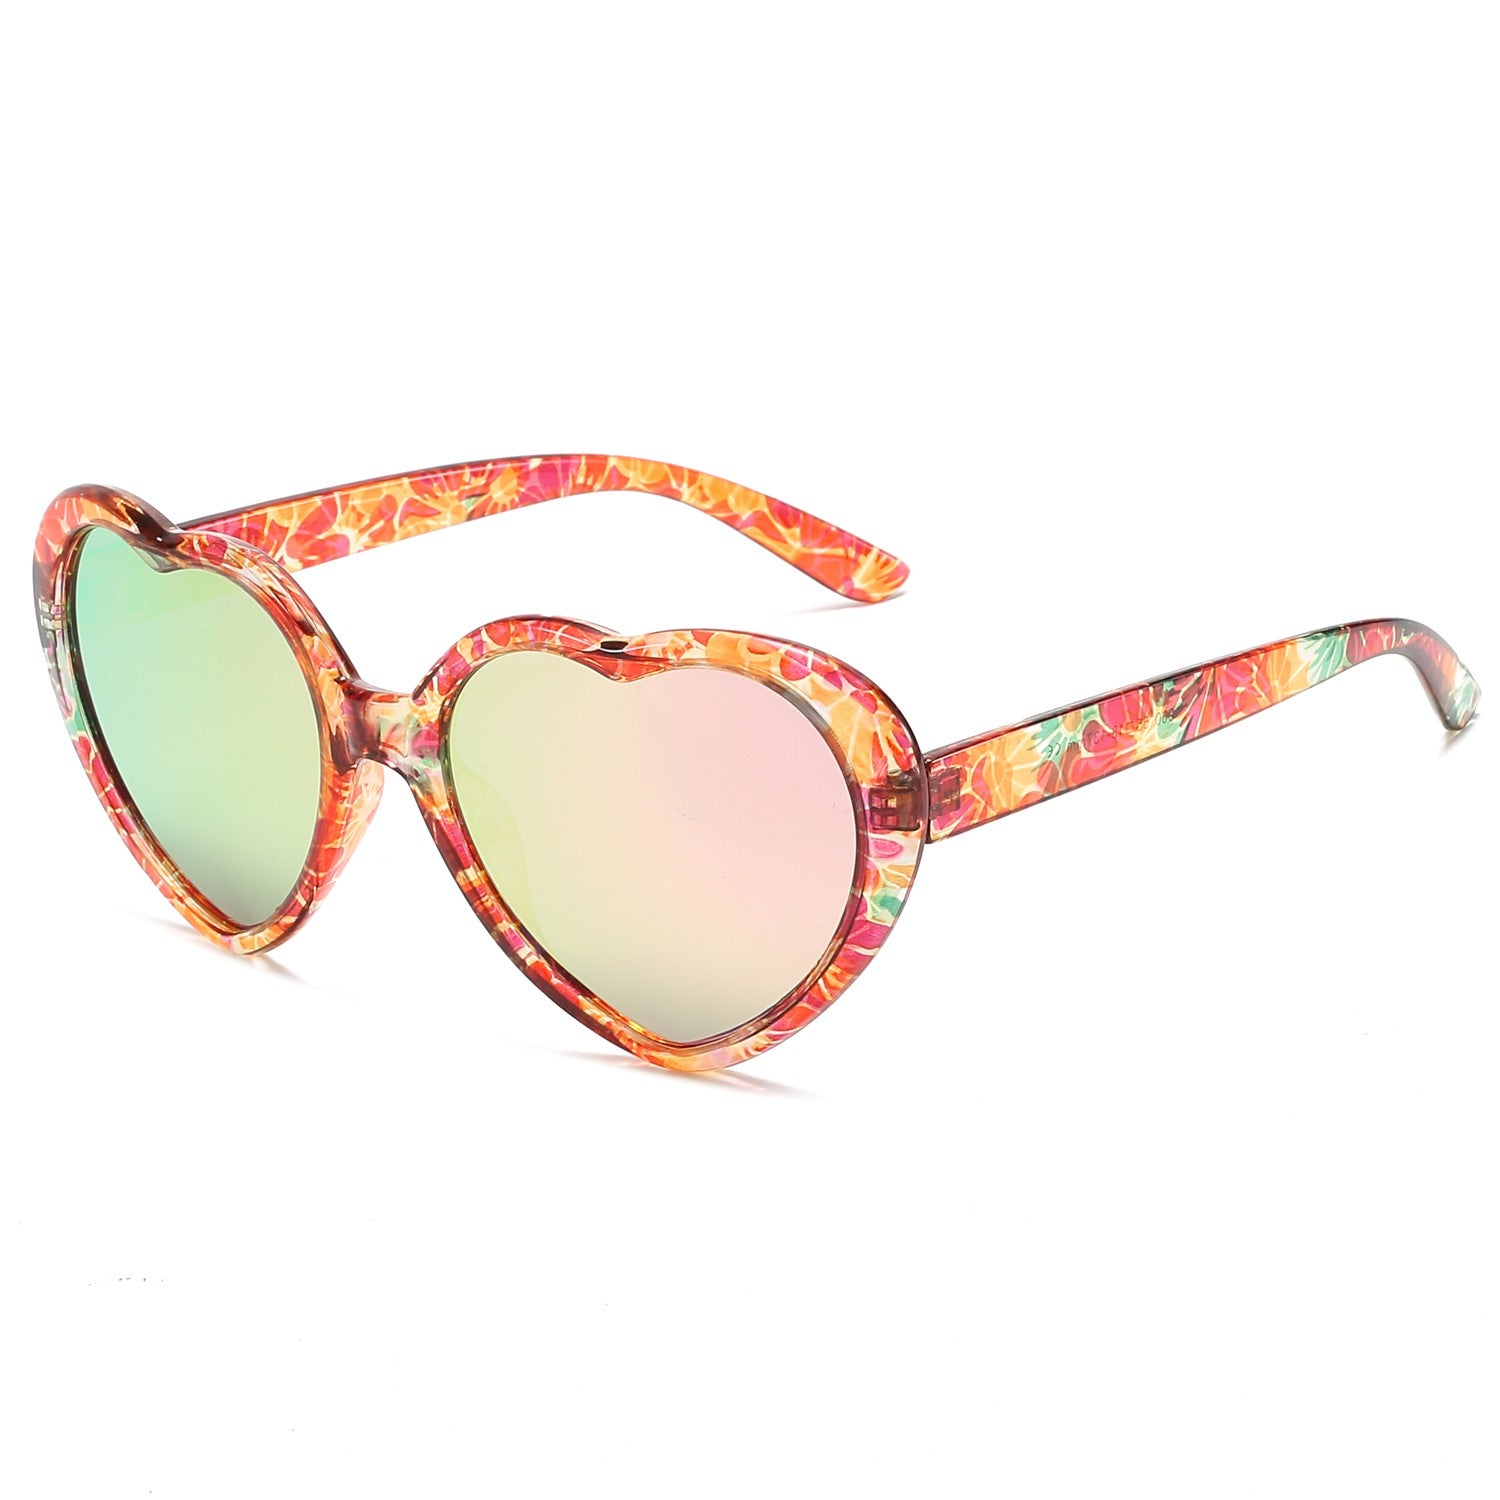  LVIOE Heart Sunglasses for Women, Polarized Heart